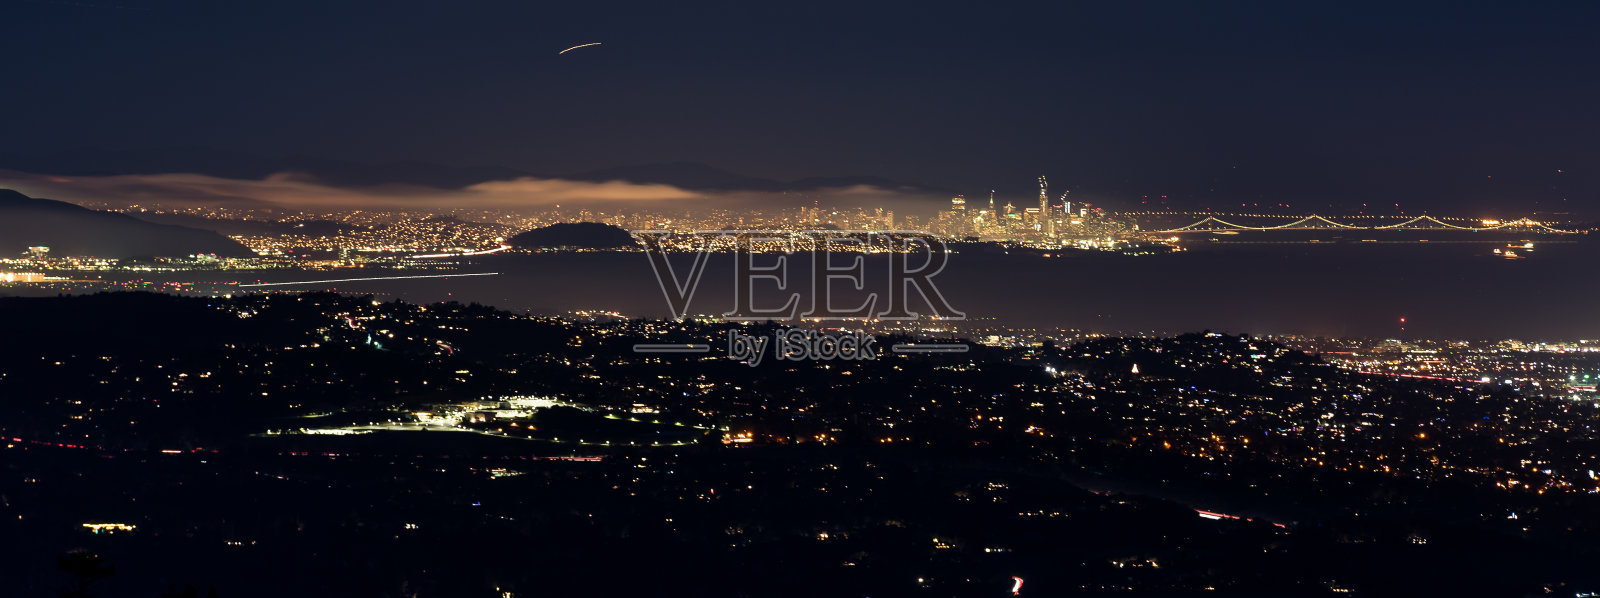 旧金山之夜照片摄影图片